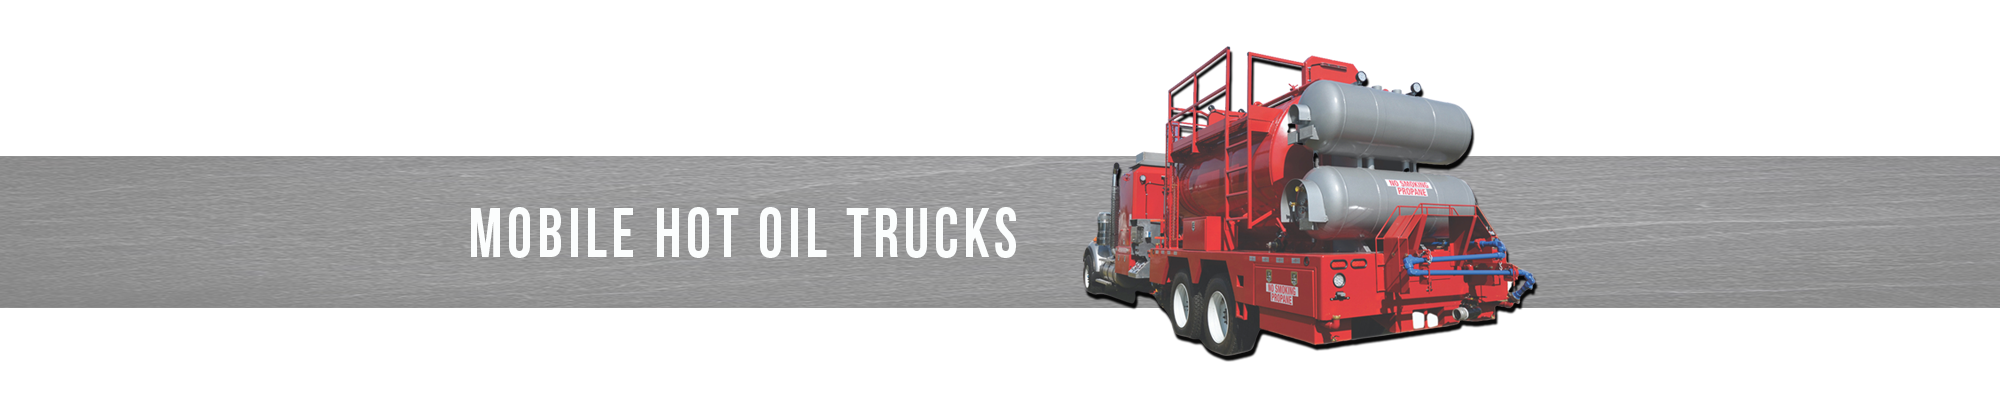 Mobile Hot Oil Trucks